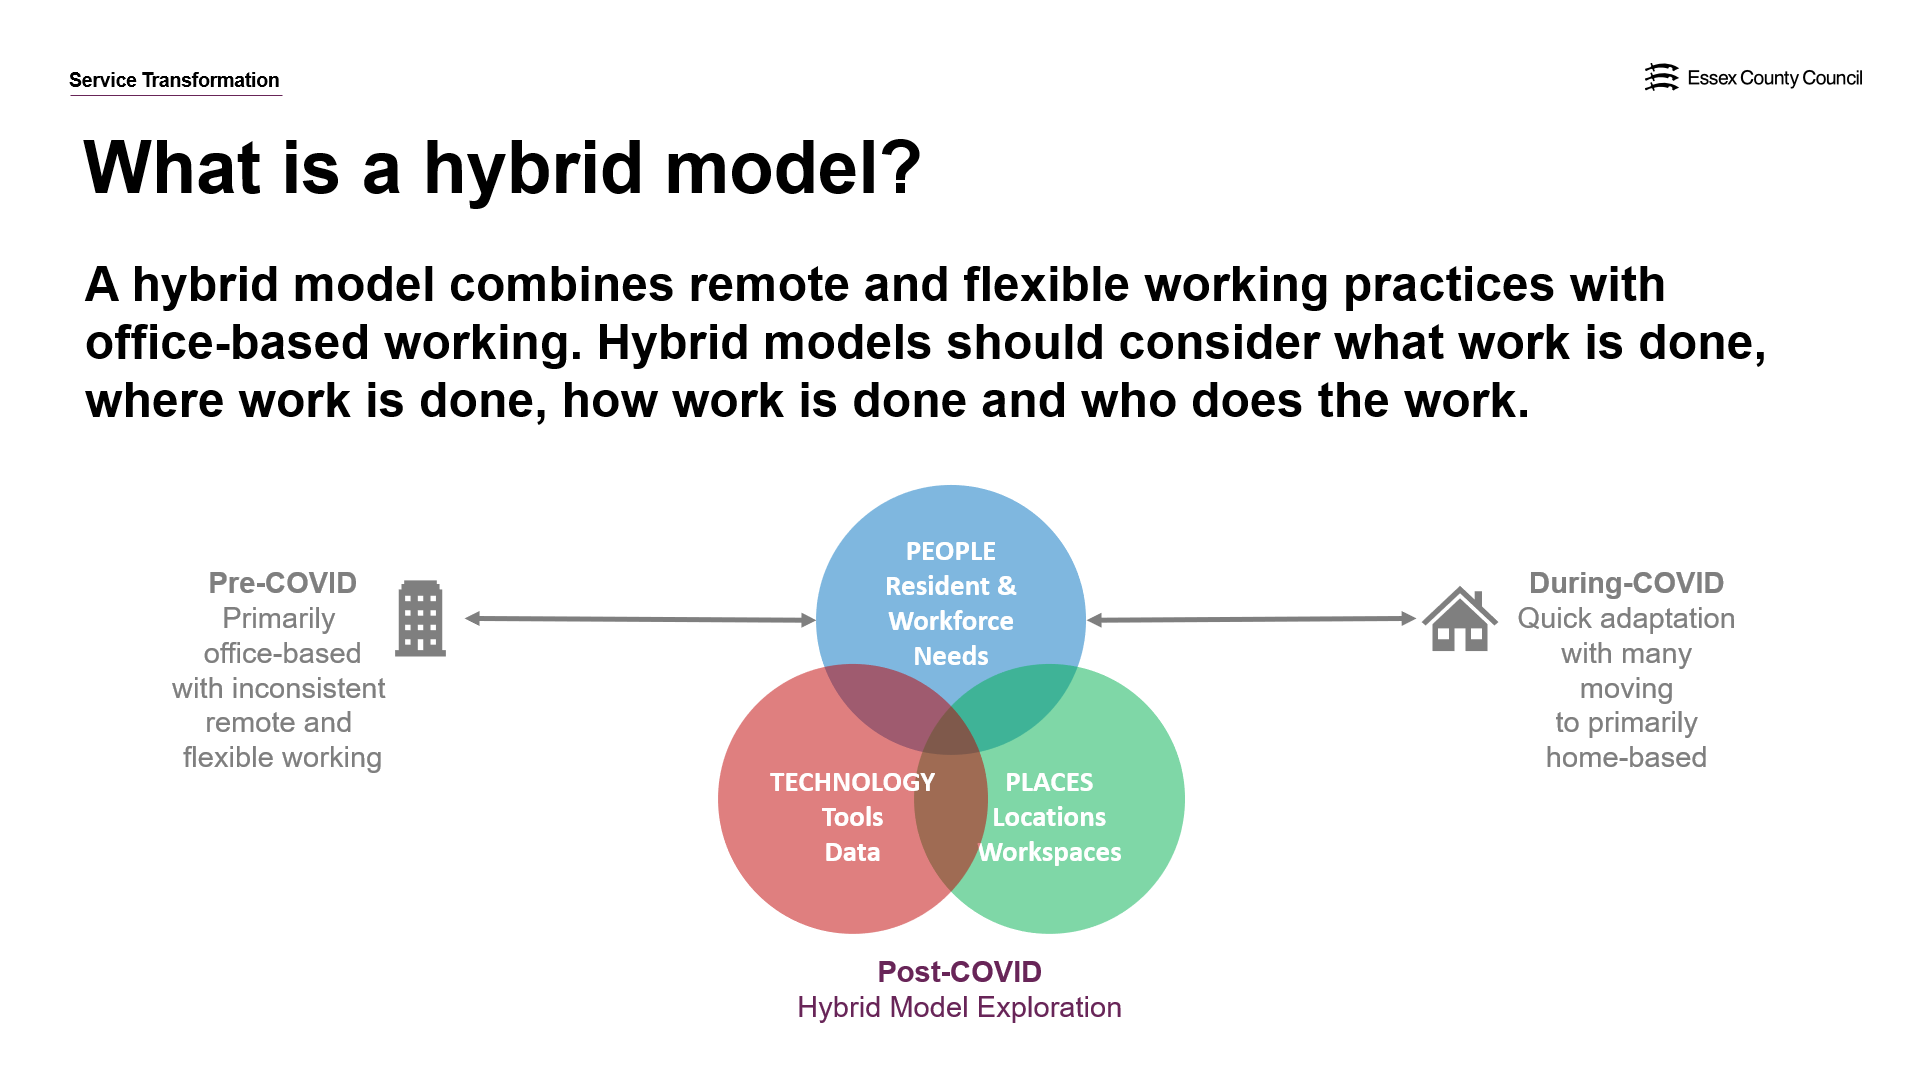 Hybrid modeling